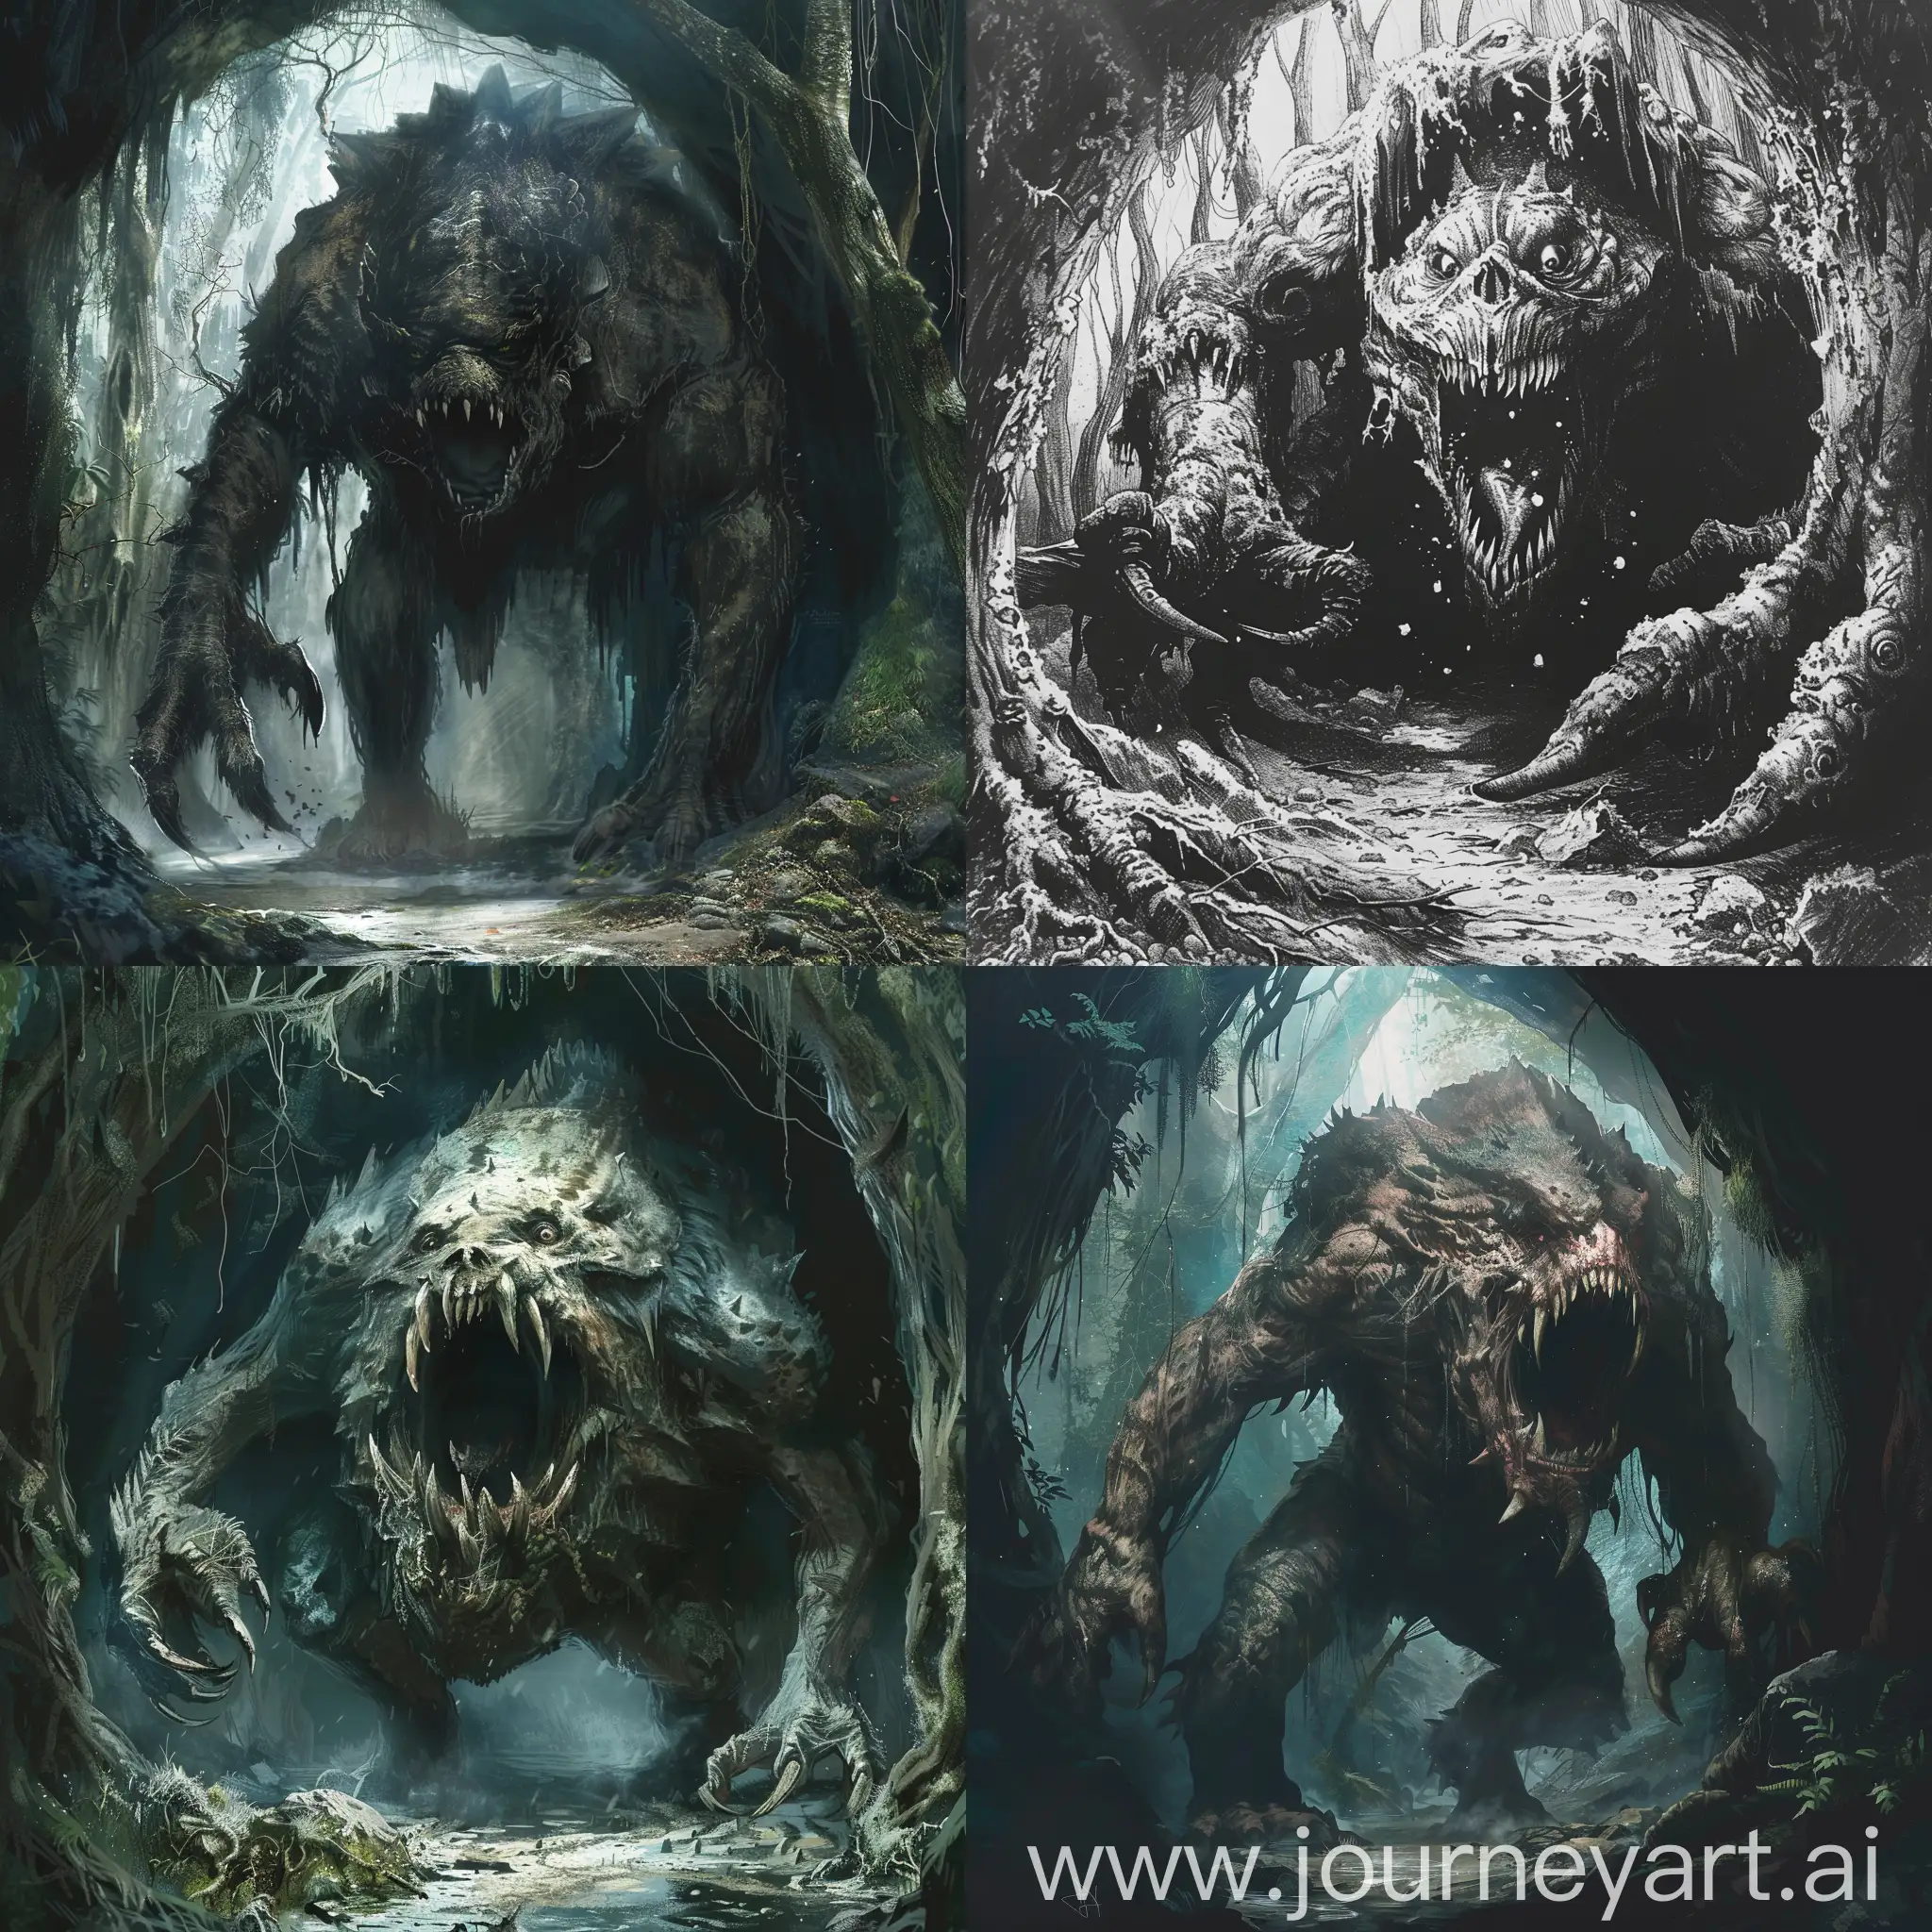 Dibuja la criatura más aterradora y grotesca que puedas realizar que sea de un gran tamaño y que emerja dentro de una gran cueva en un bosque oscuro.